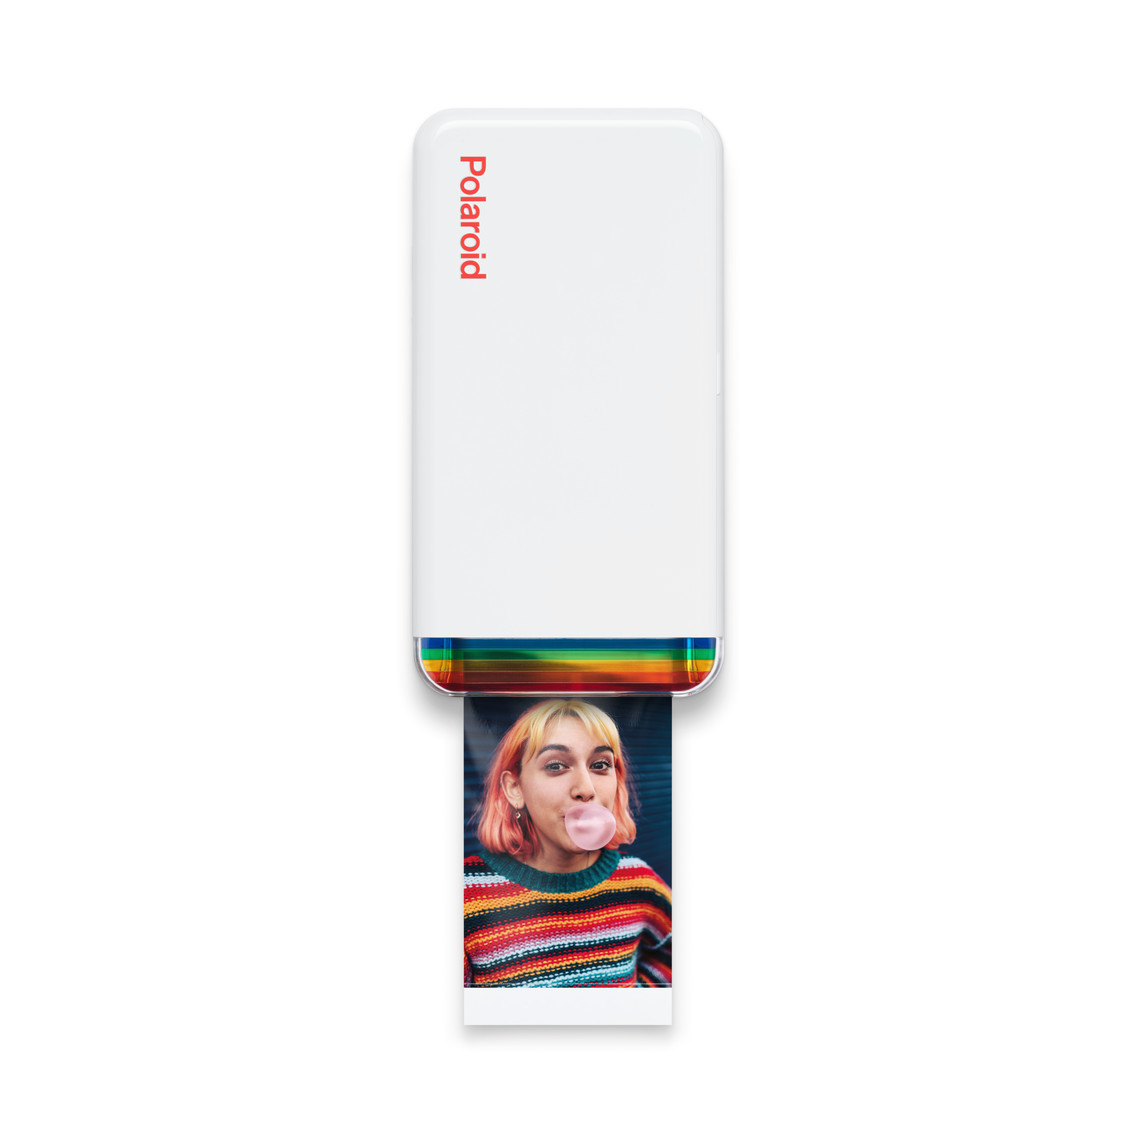 Der Polaroid Hi-Print 2x3 Fotodrucker verwandelt die Aufnahmen deiner iPhone Fotomediathek in hochwertige Farbdrucke.